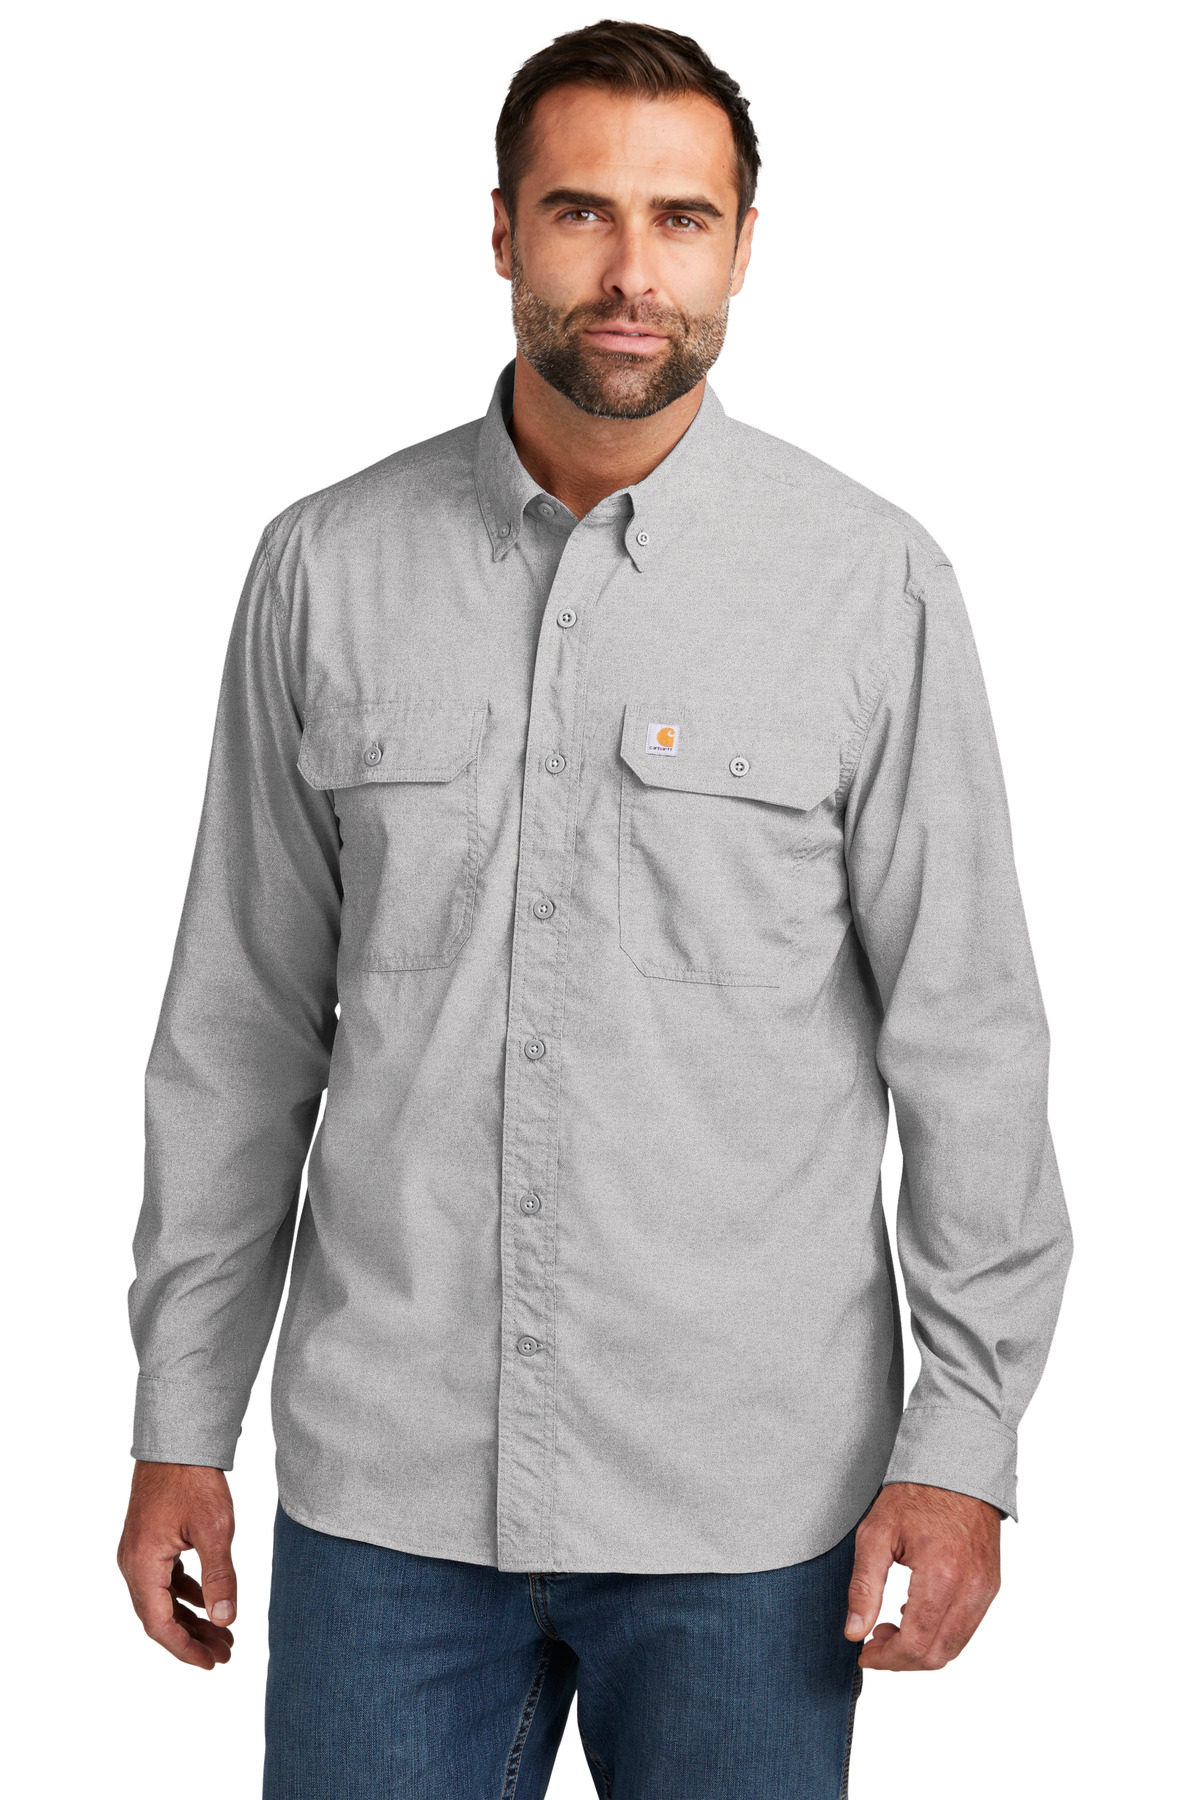 Carhartt Force Solid Long Sleeve Shirt-Carhartt